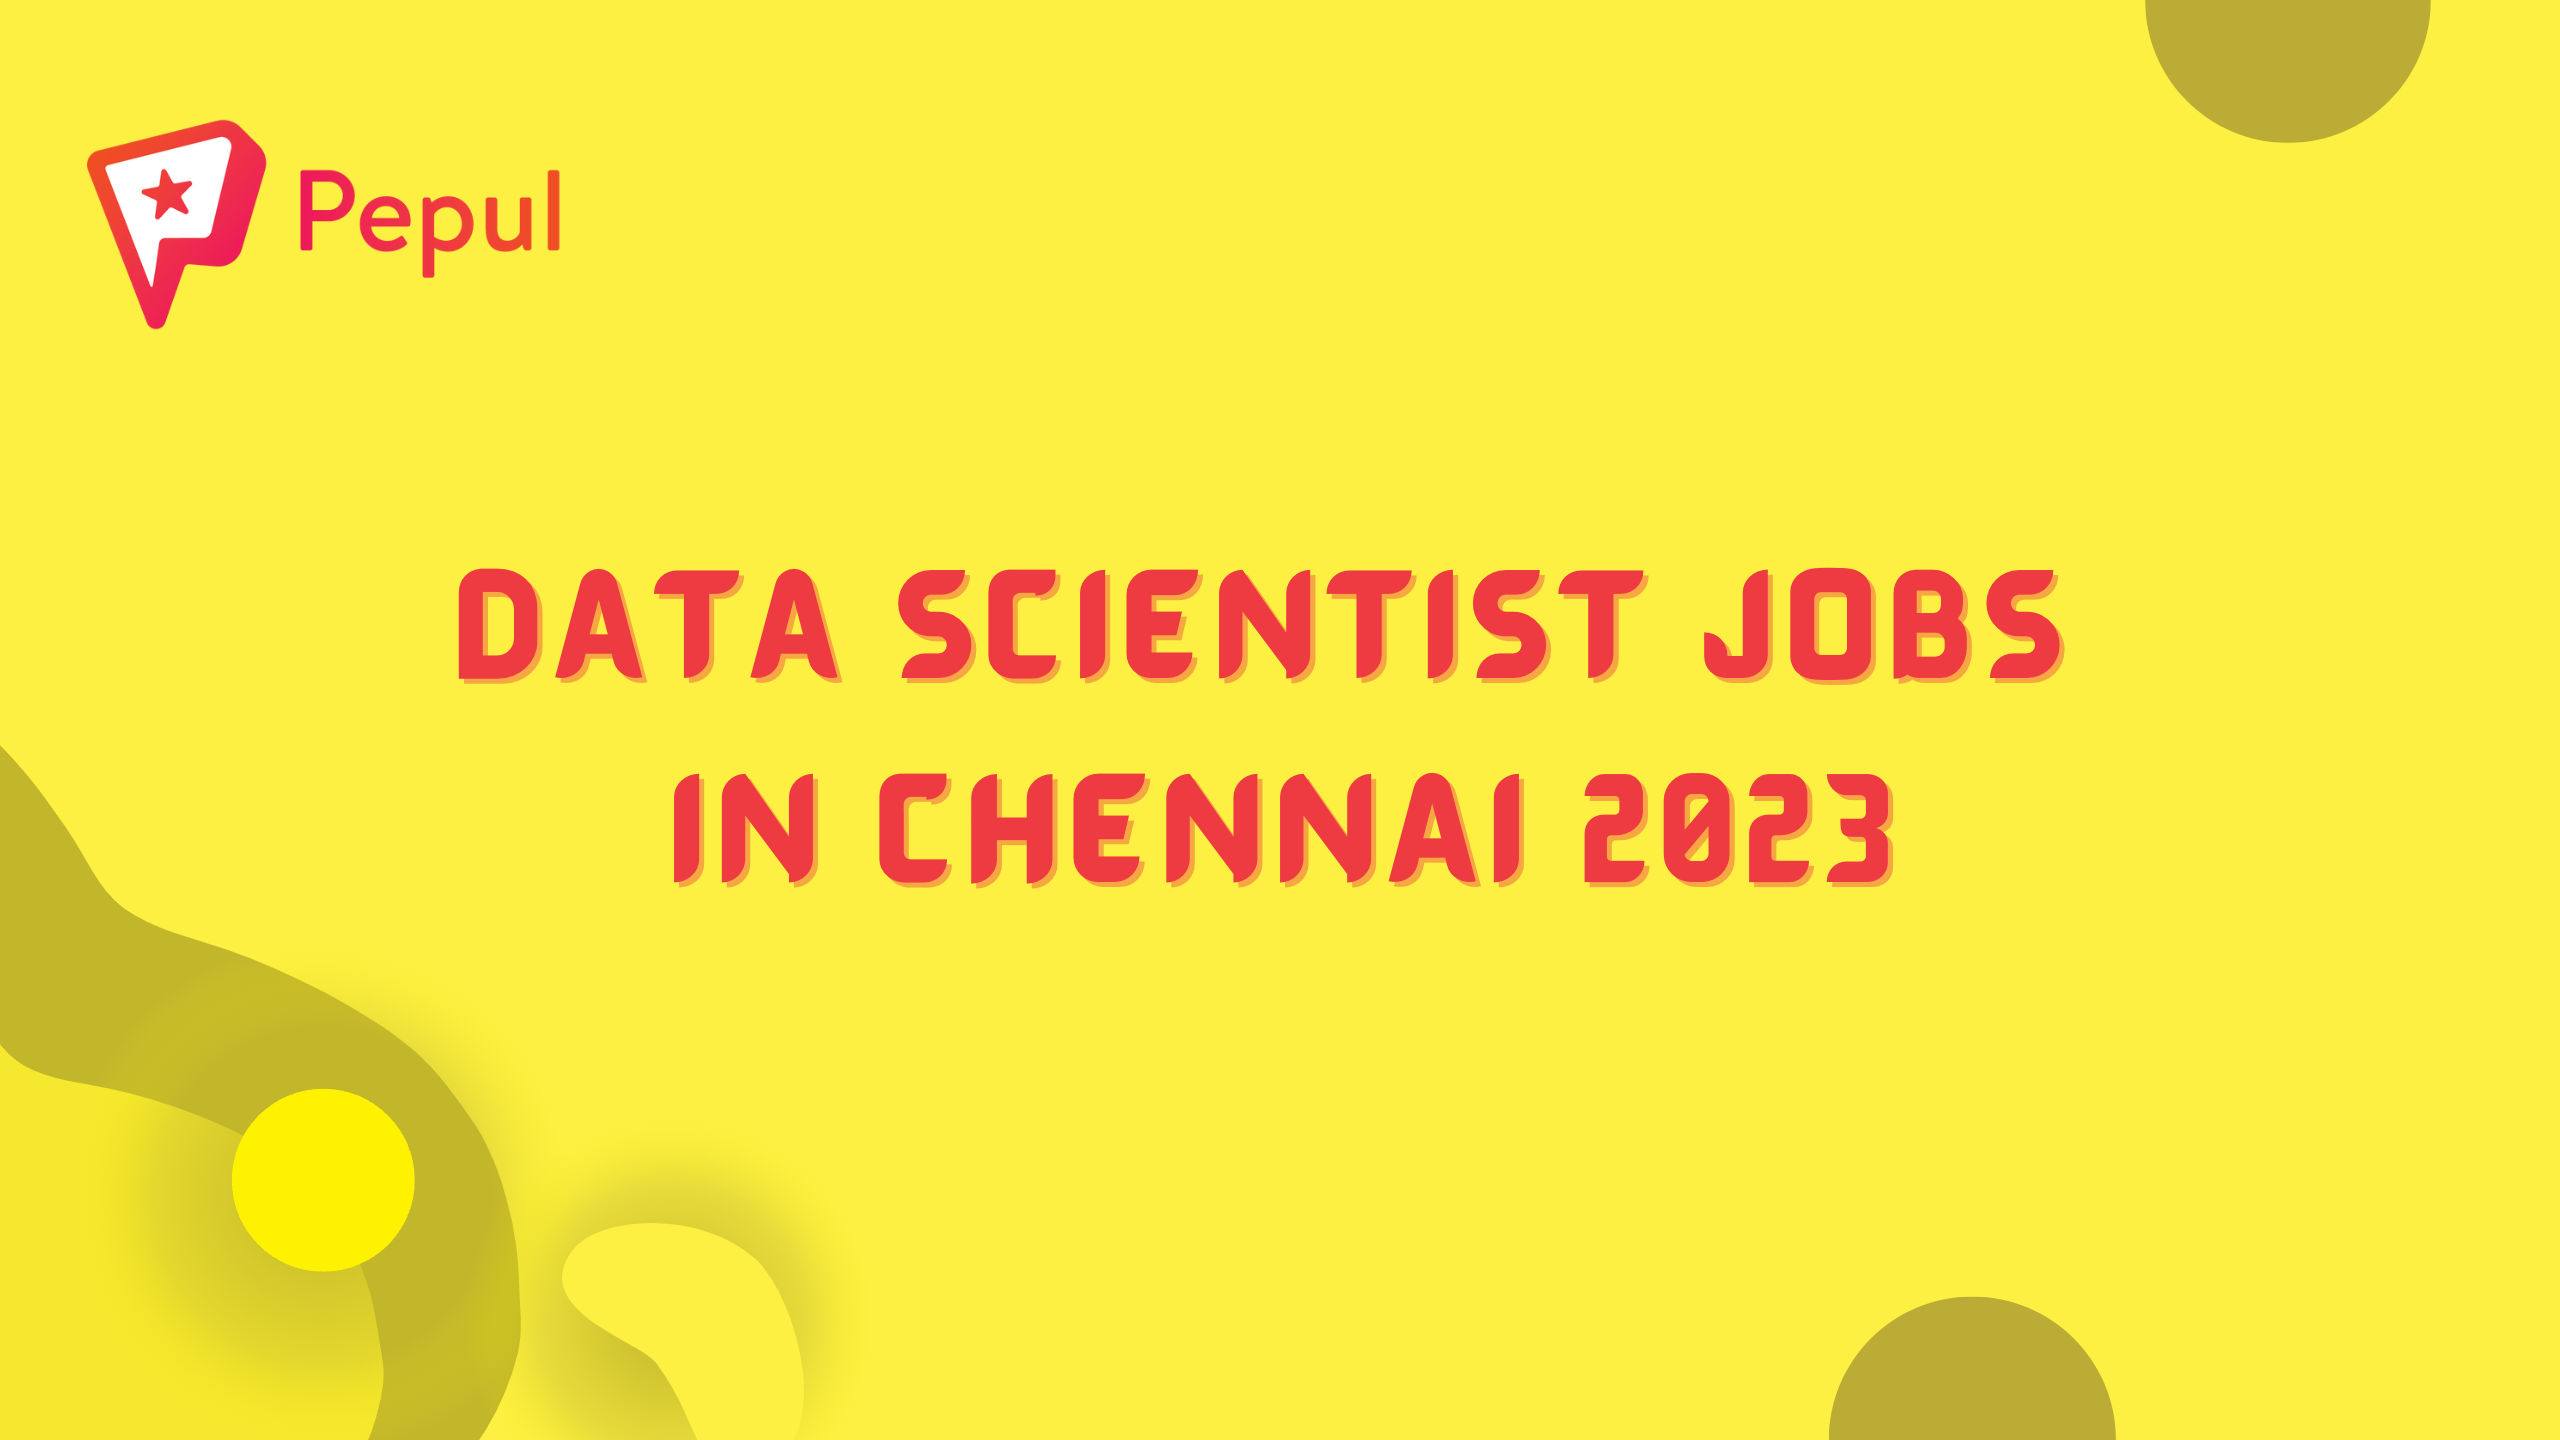 Data Scientist Jobs in Chennai 2023